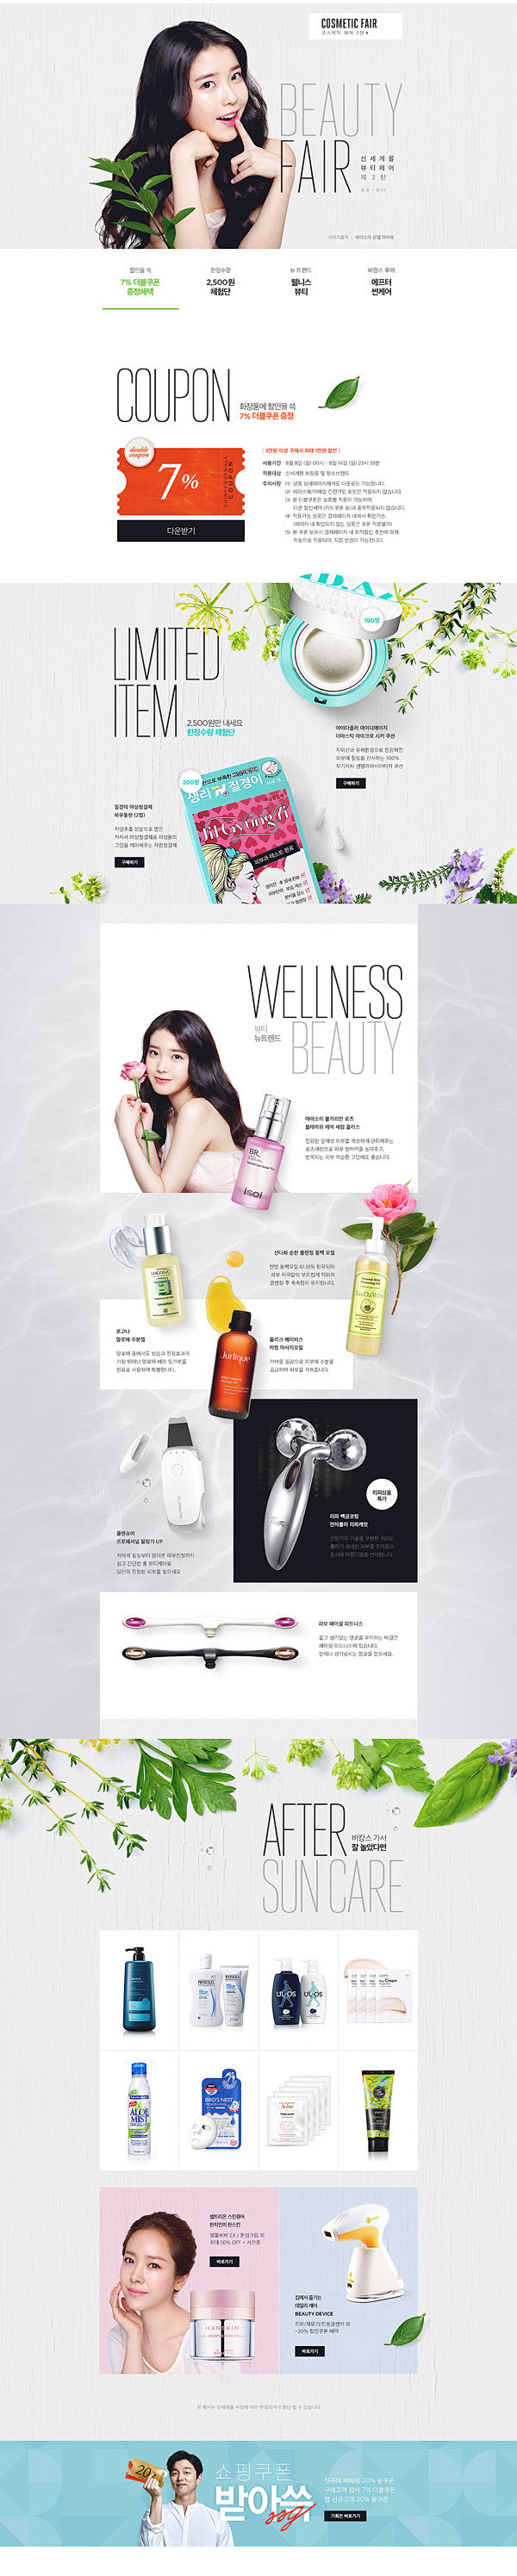 SSG韩国美妆美容化妆品天猫店铺首页设计...